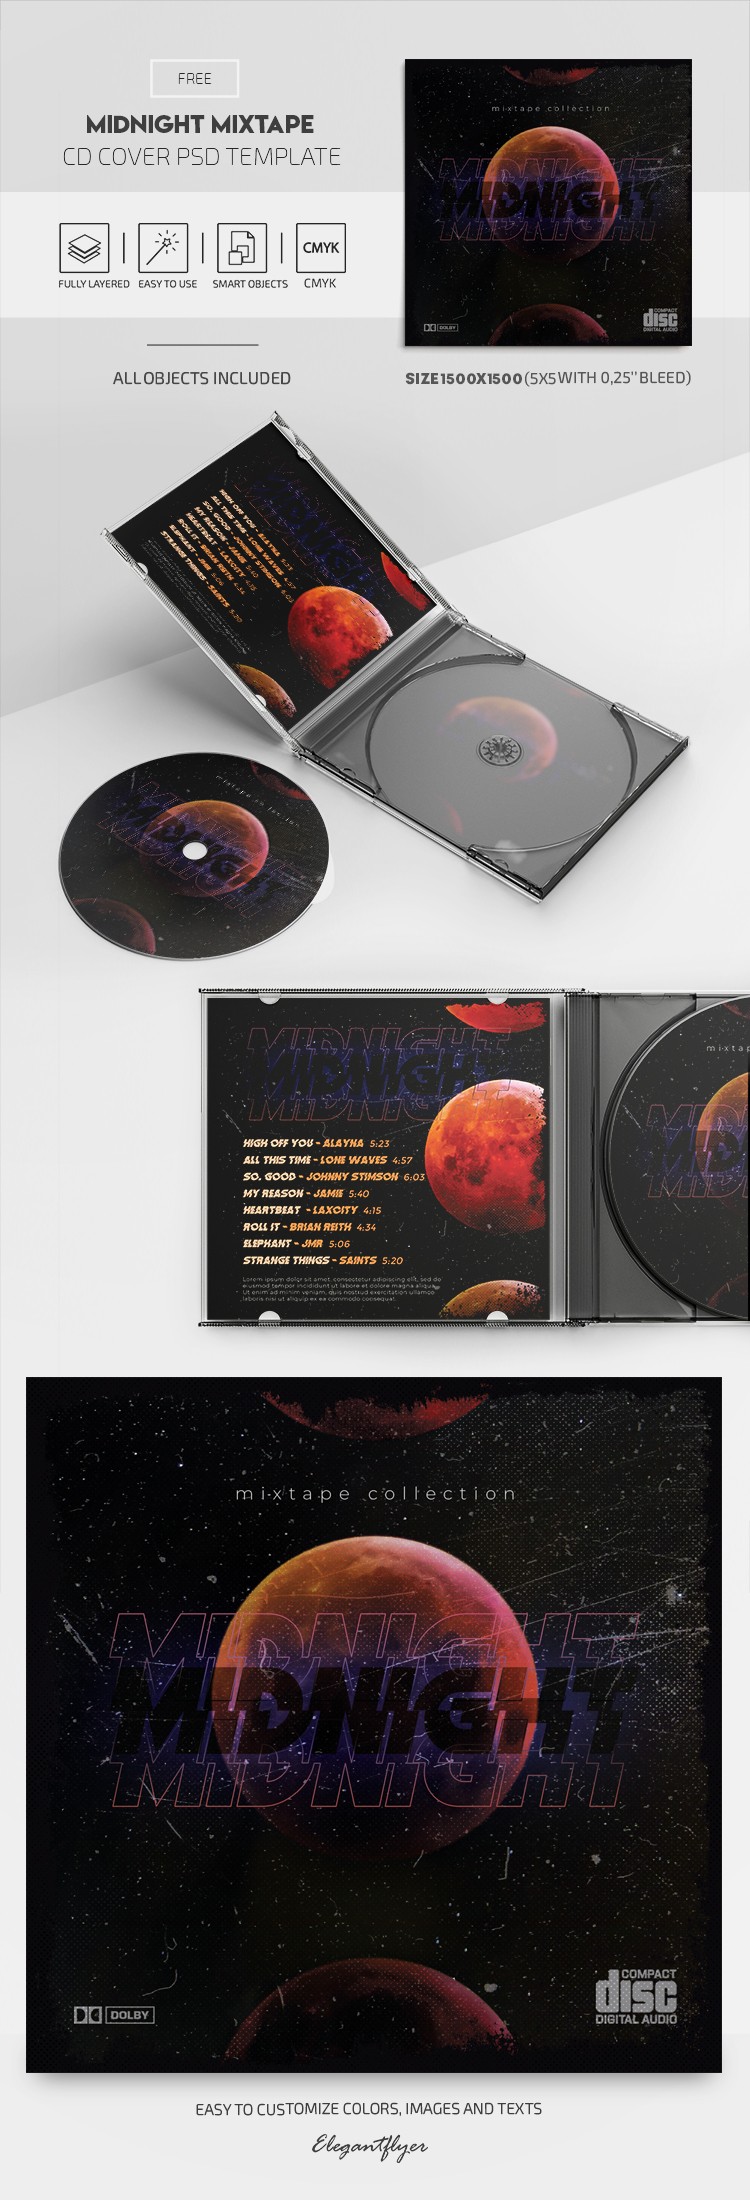 Portada del CD Midnight Mixtape by ElegantFlyer